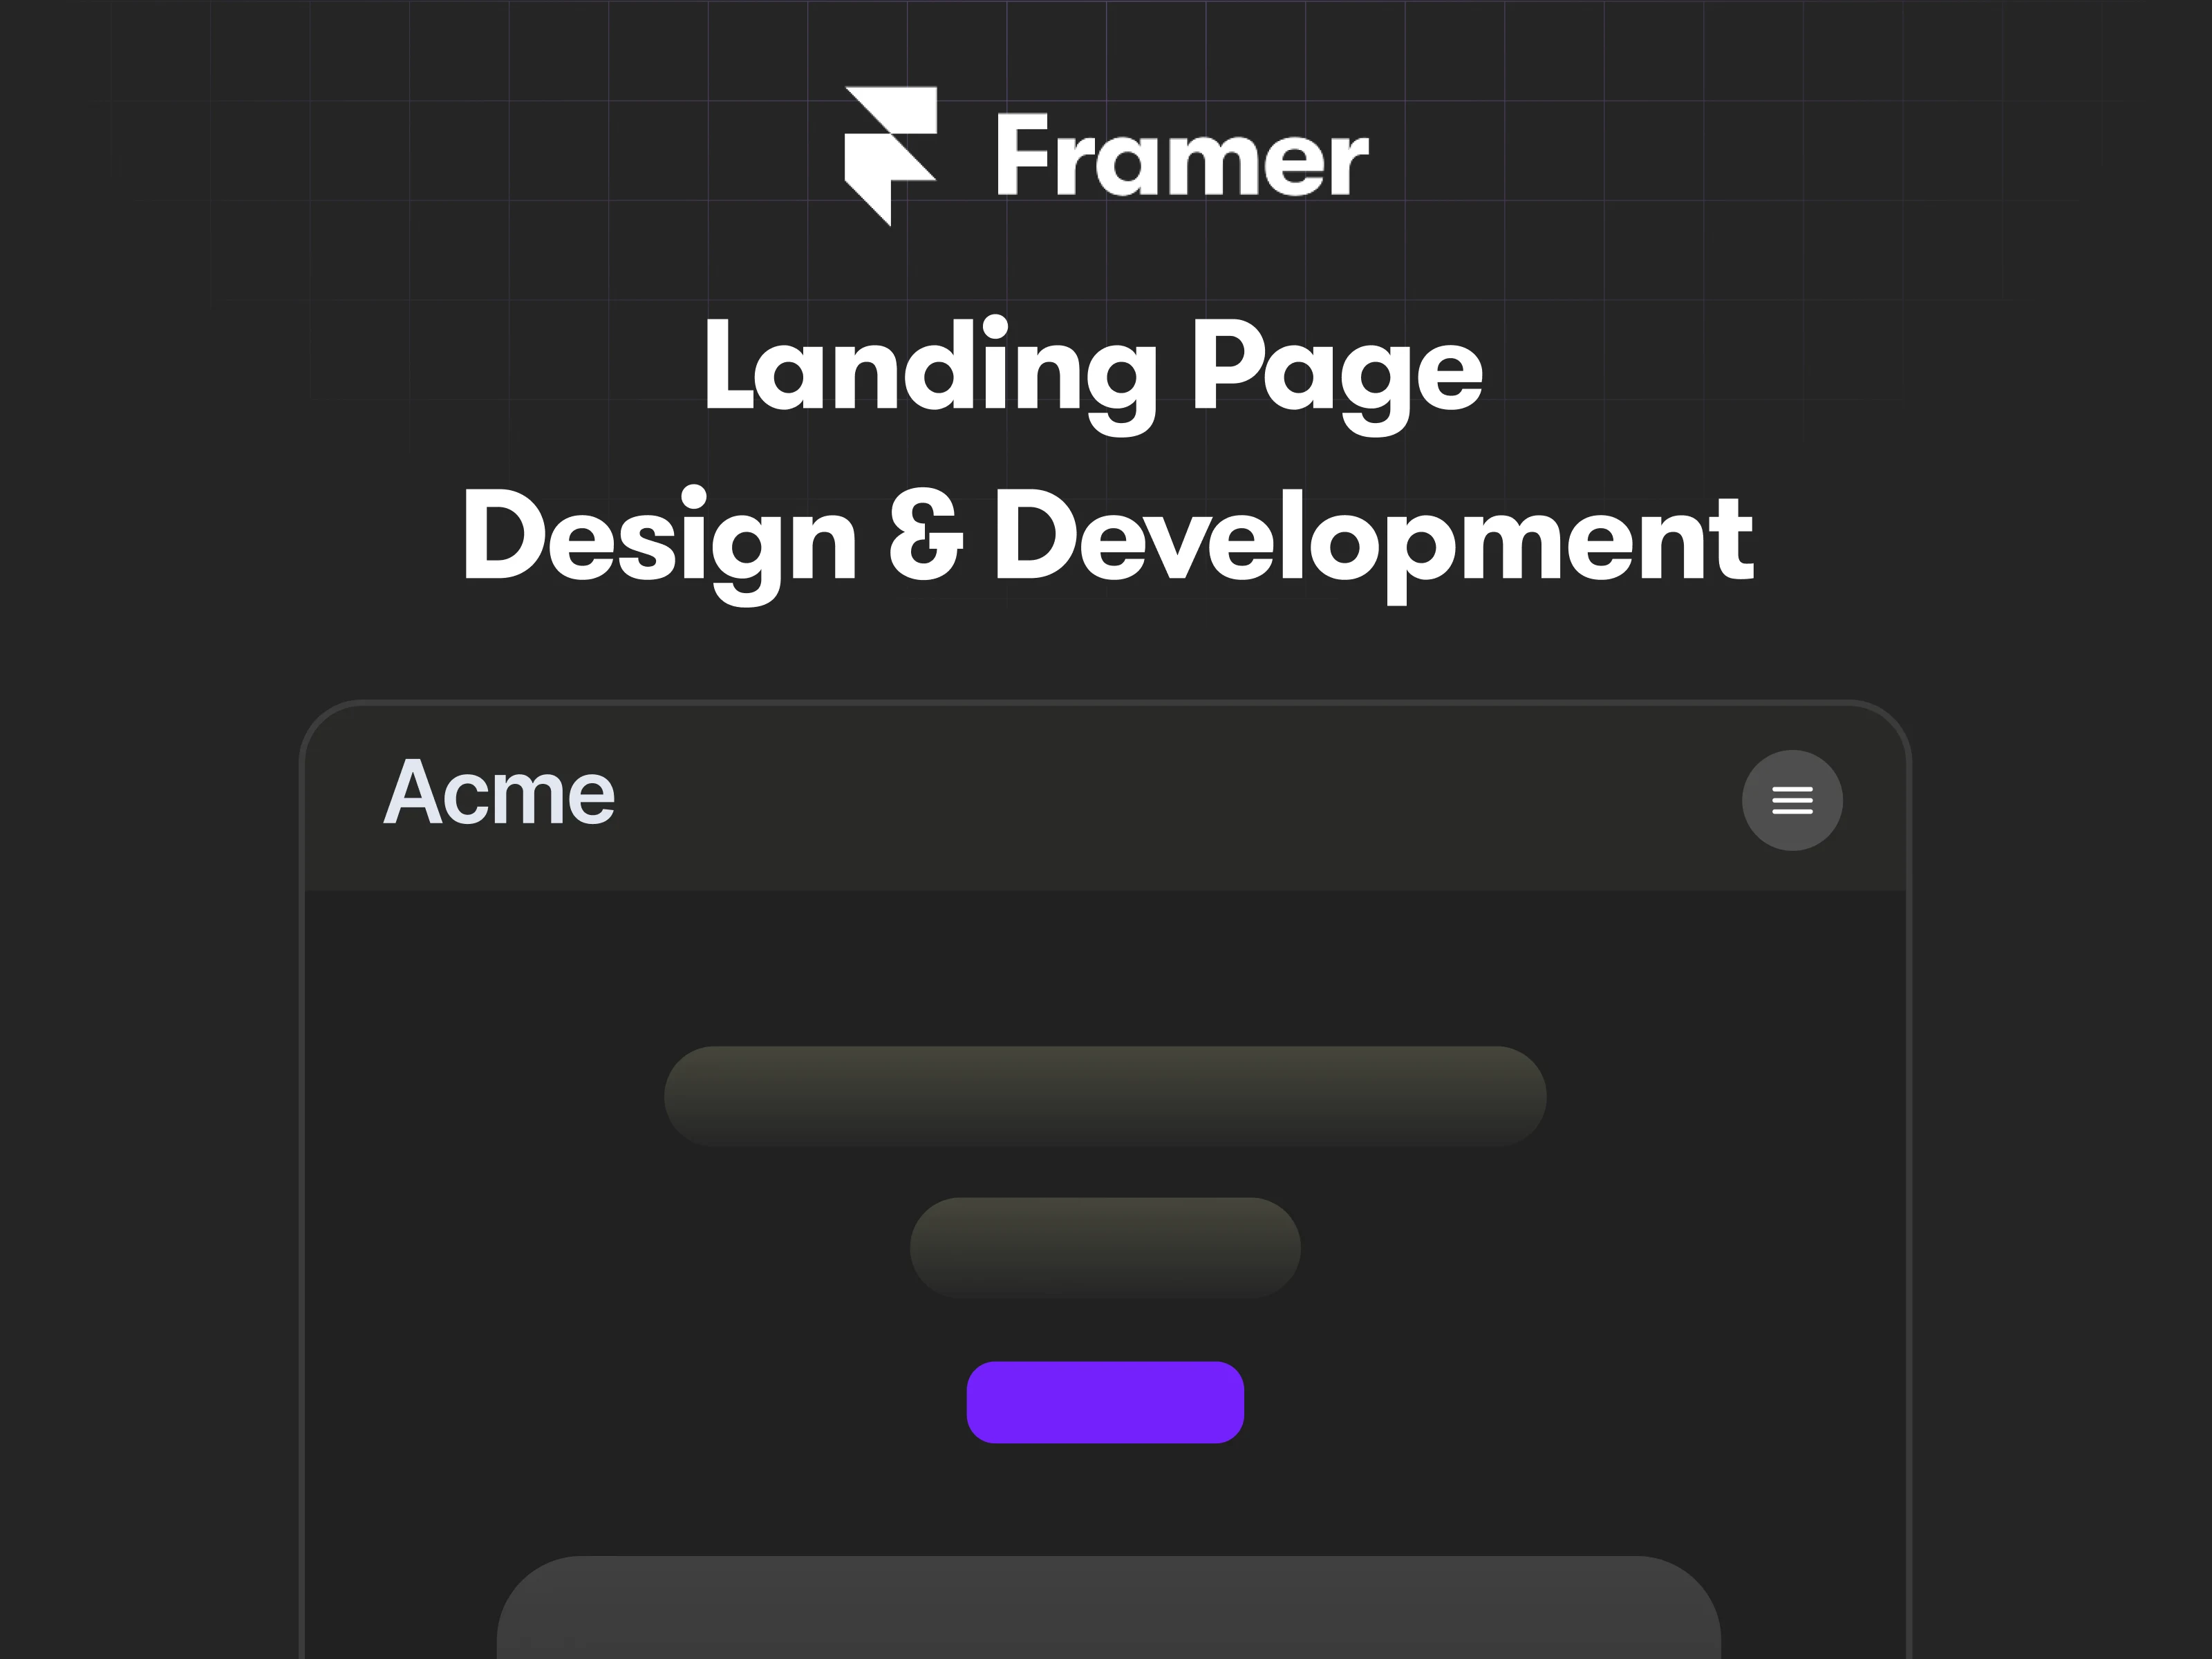 Framer Landing Page Design & Development , a service by Prathamesh Agrawal